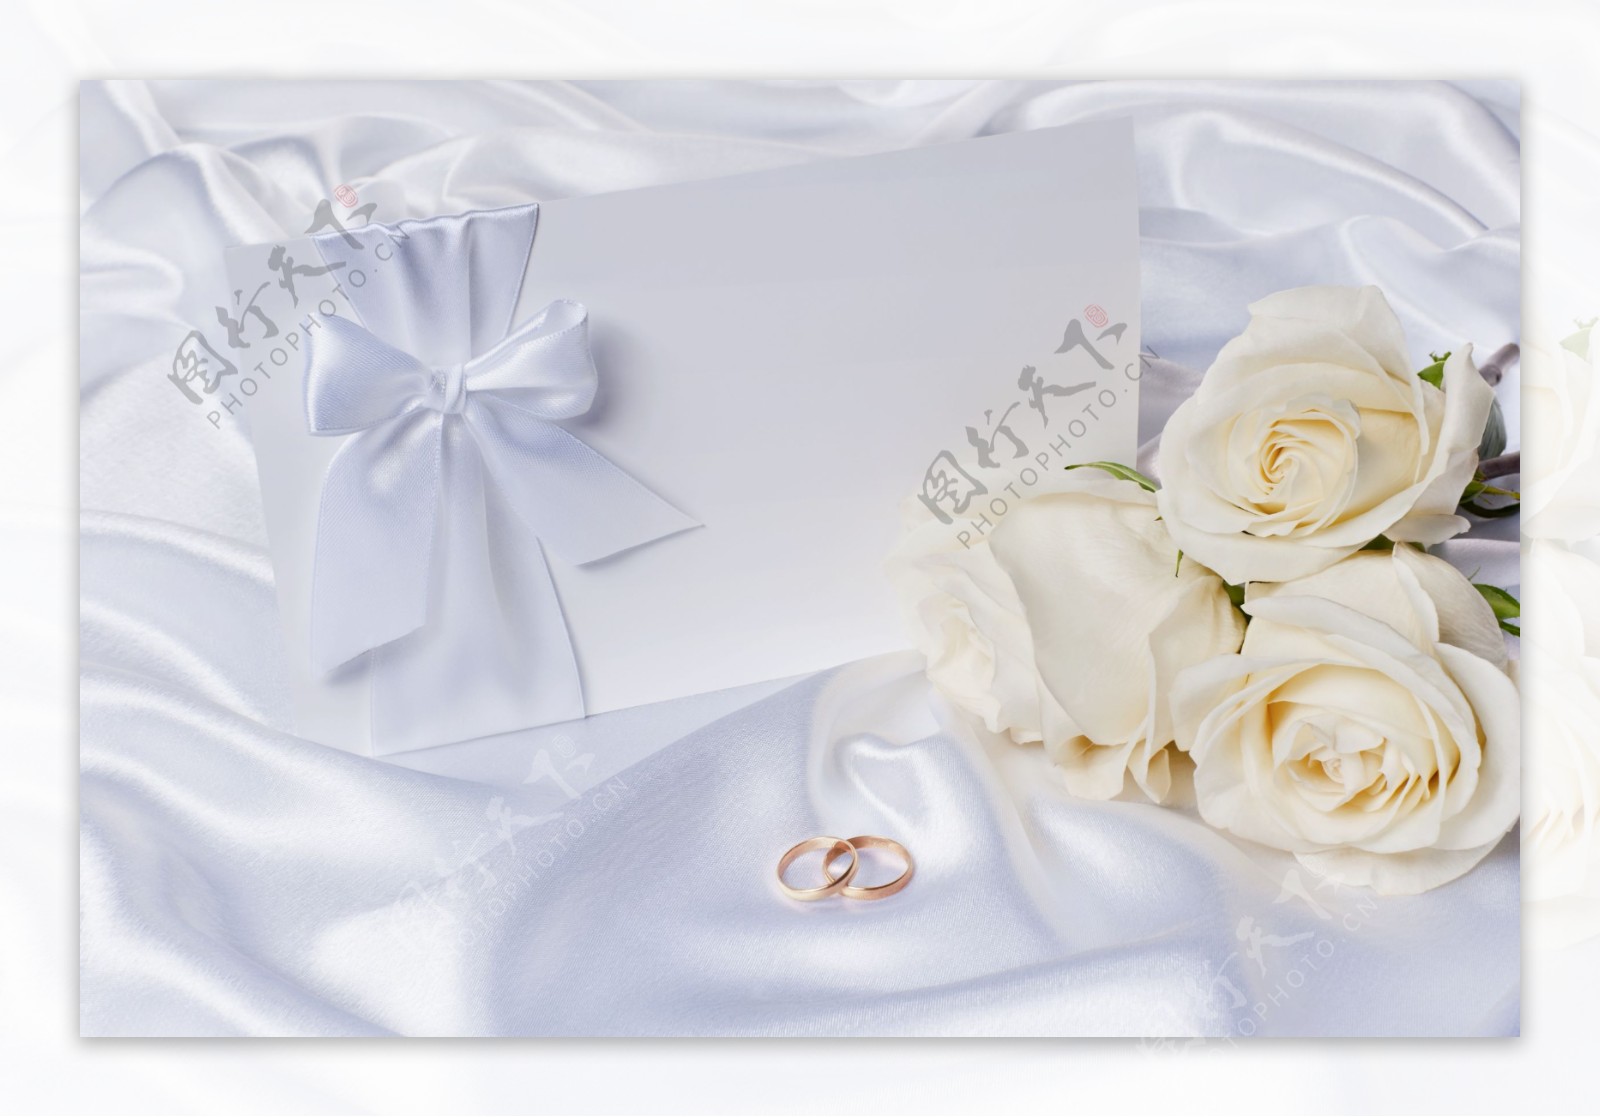 婚礼邀请卡与花朵图片